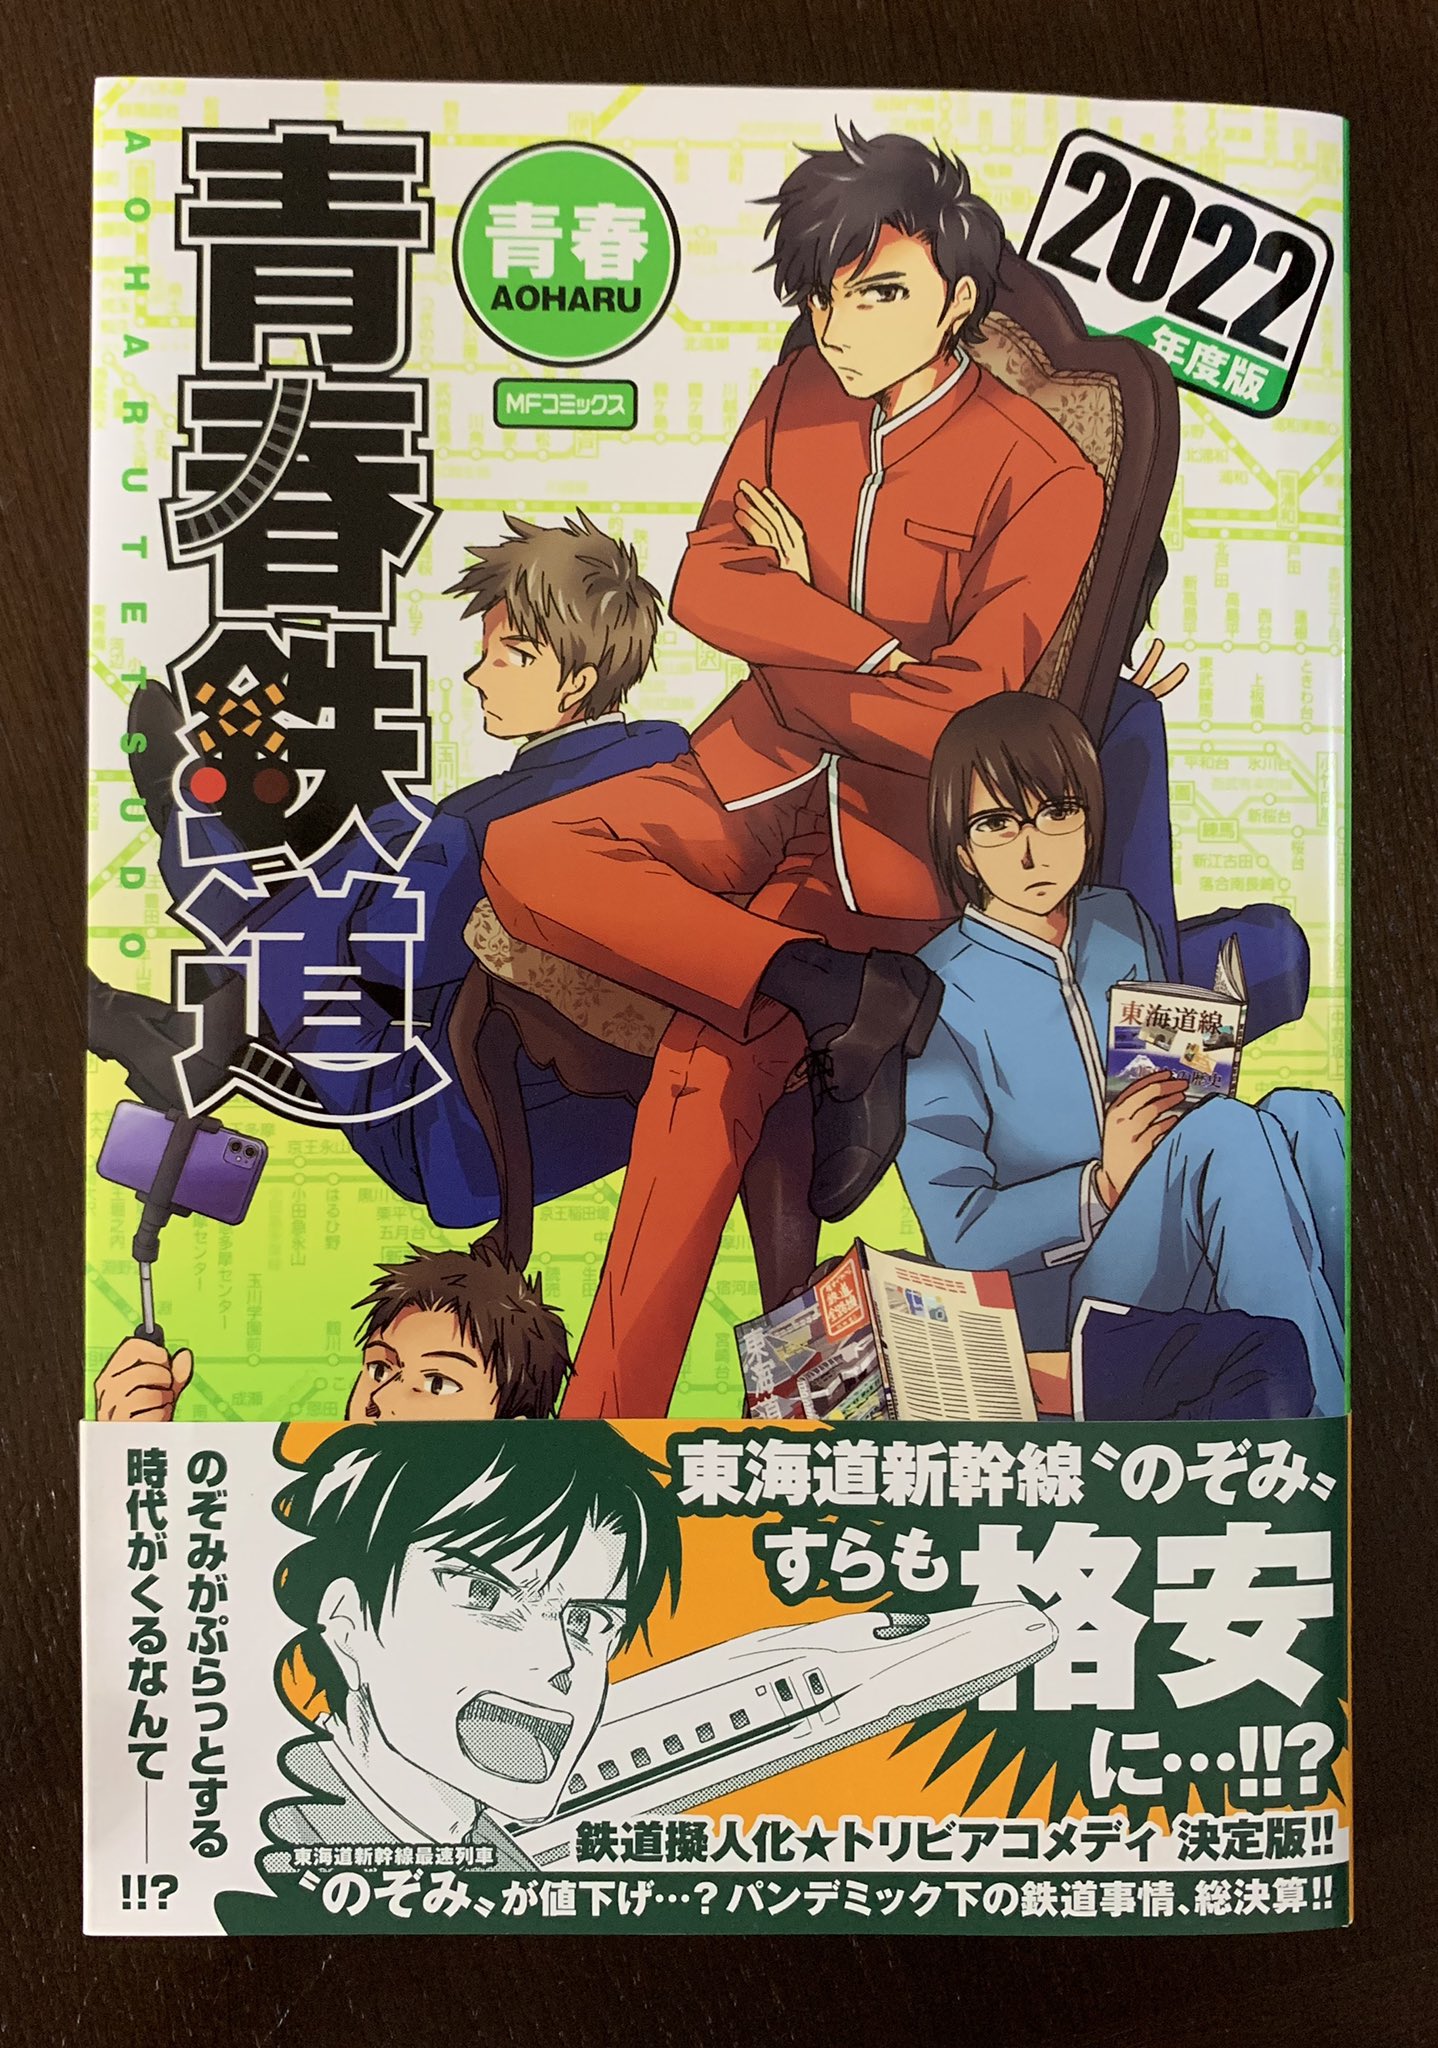 青春鉄道 最新コミックス 22年度版 発売 Aotetsu News Twitter